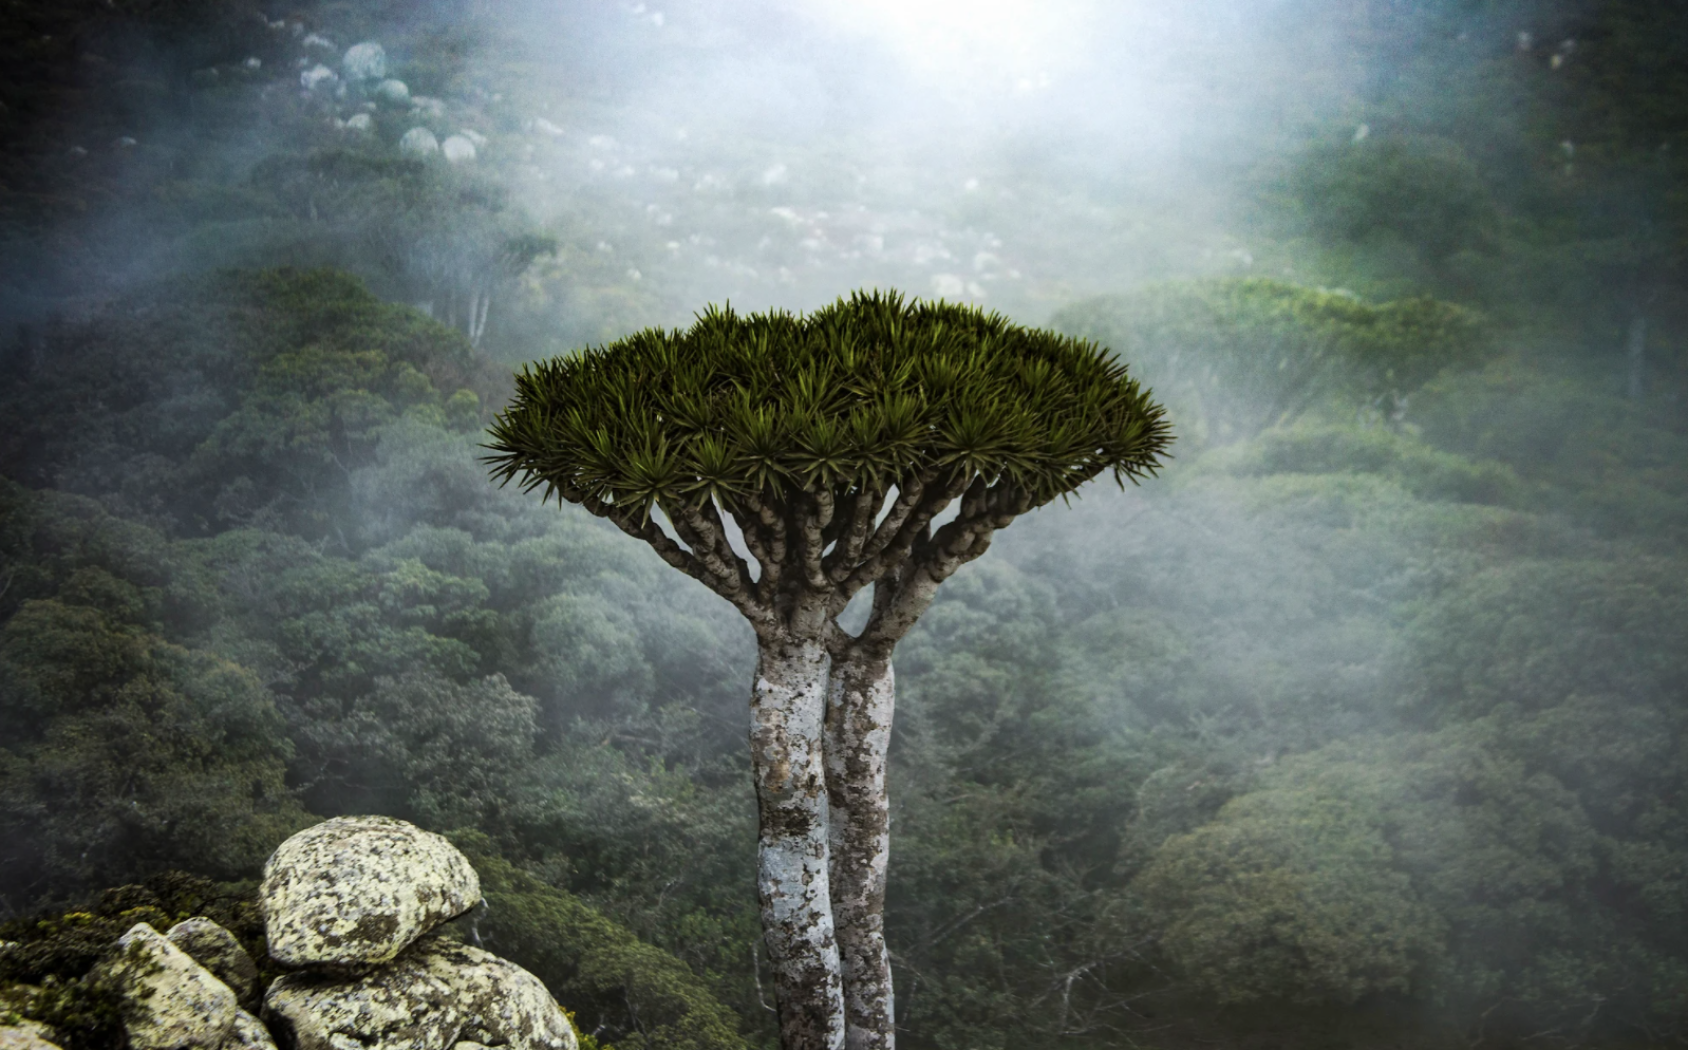 Una imagen de cerca del árbol dragón en un bosque con niebla.